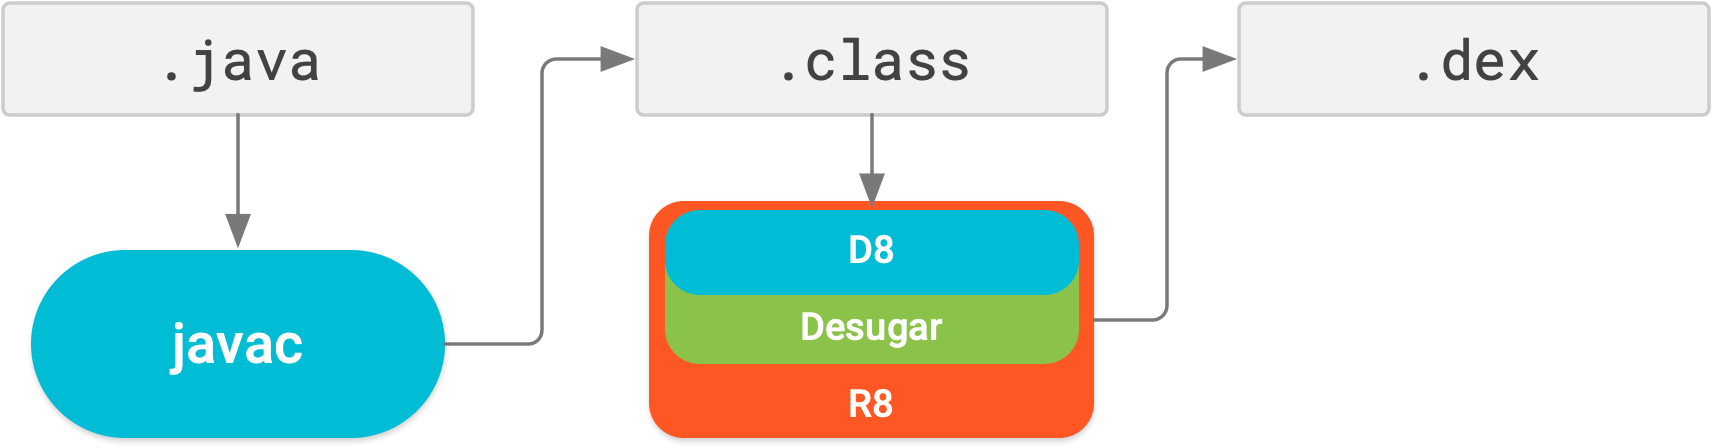 有了 R8，可以在一个编译步骤中执行脱糖、压缩、混淆、优化和 dex 处理。